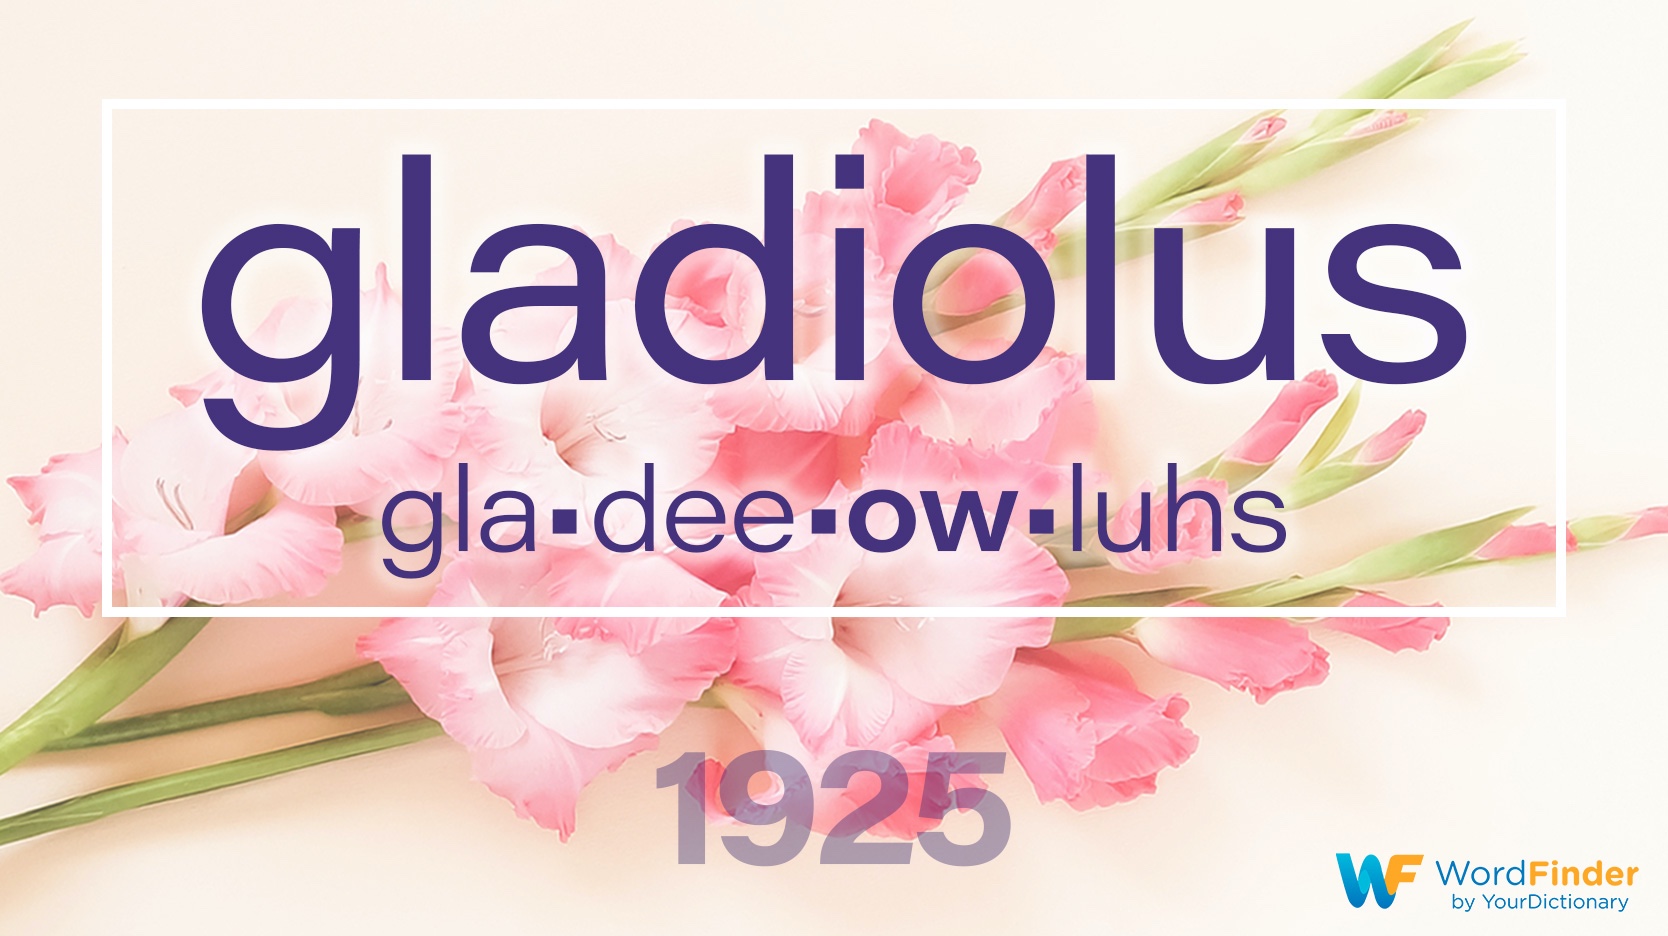 national spelling bee winning word gladiolus 1925